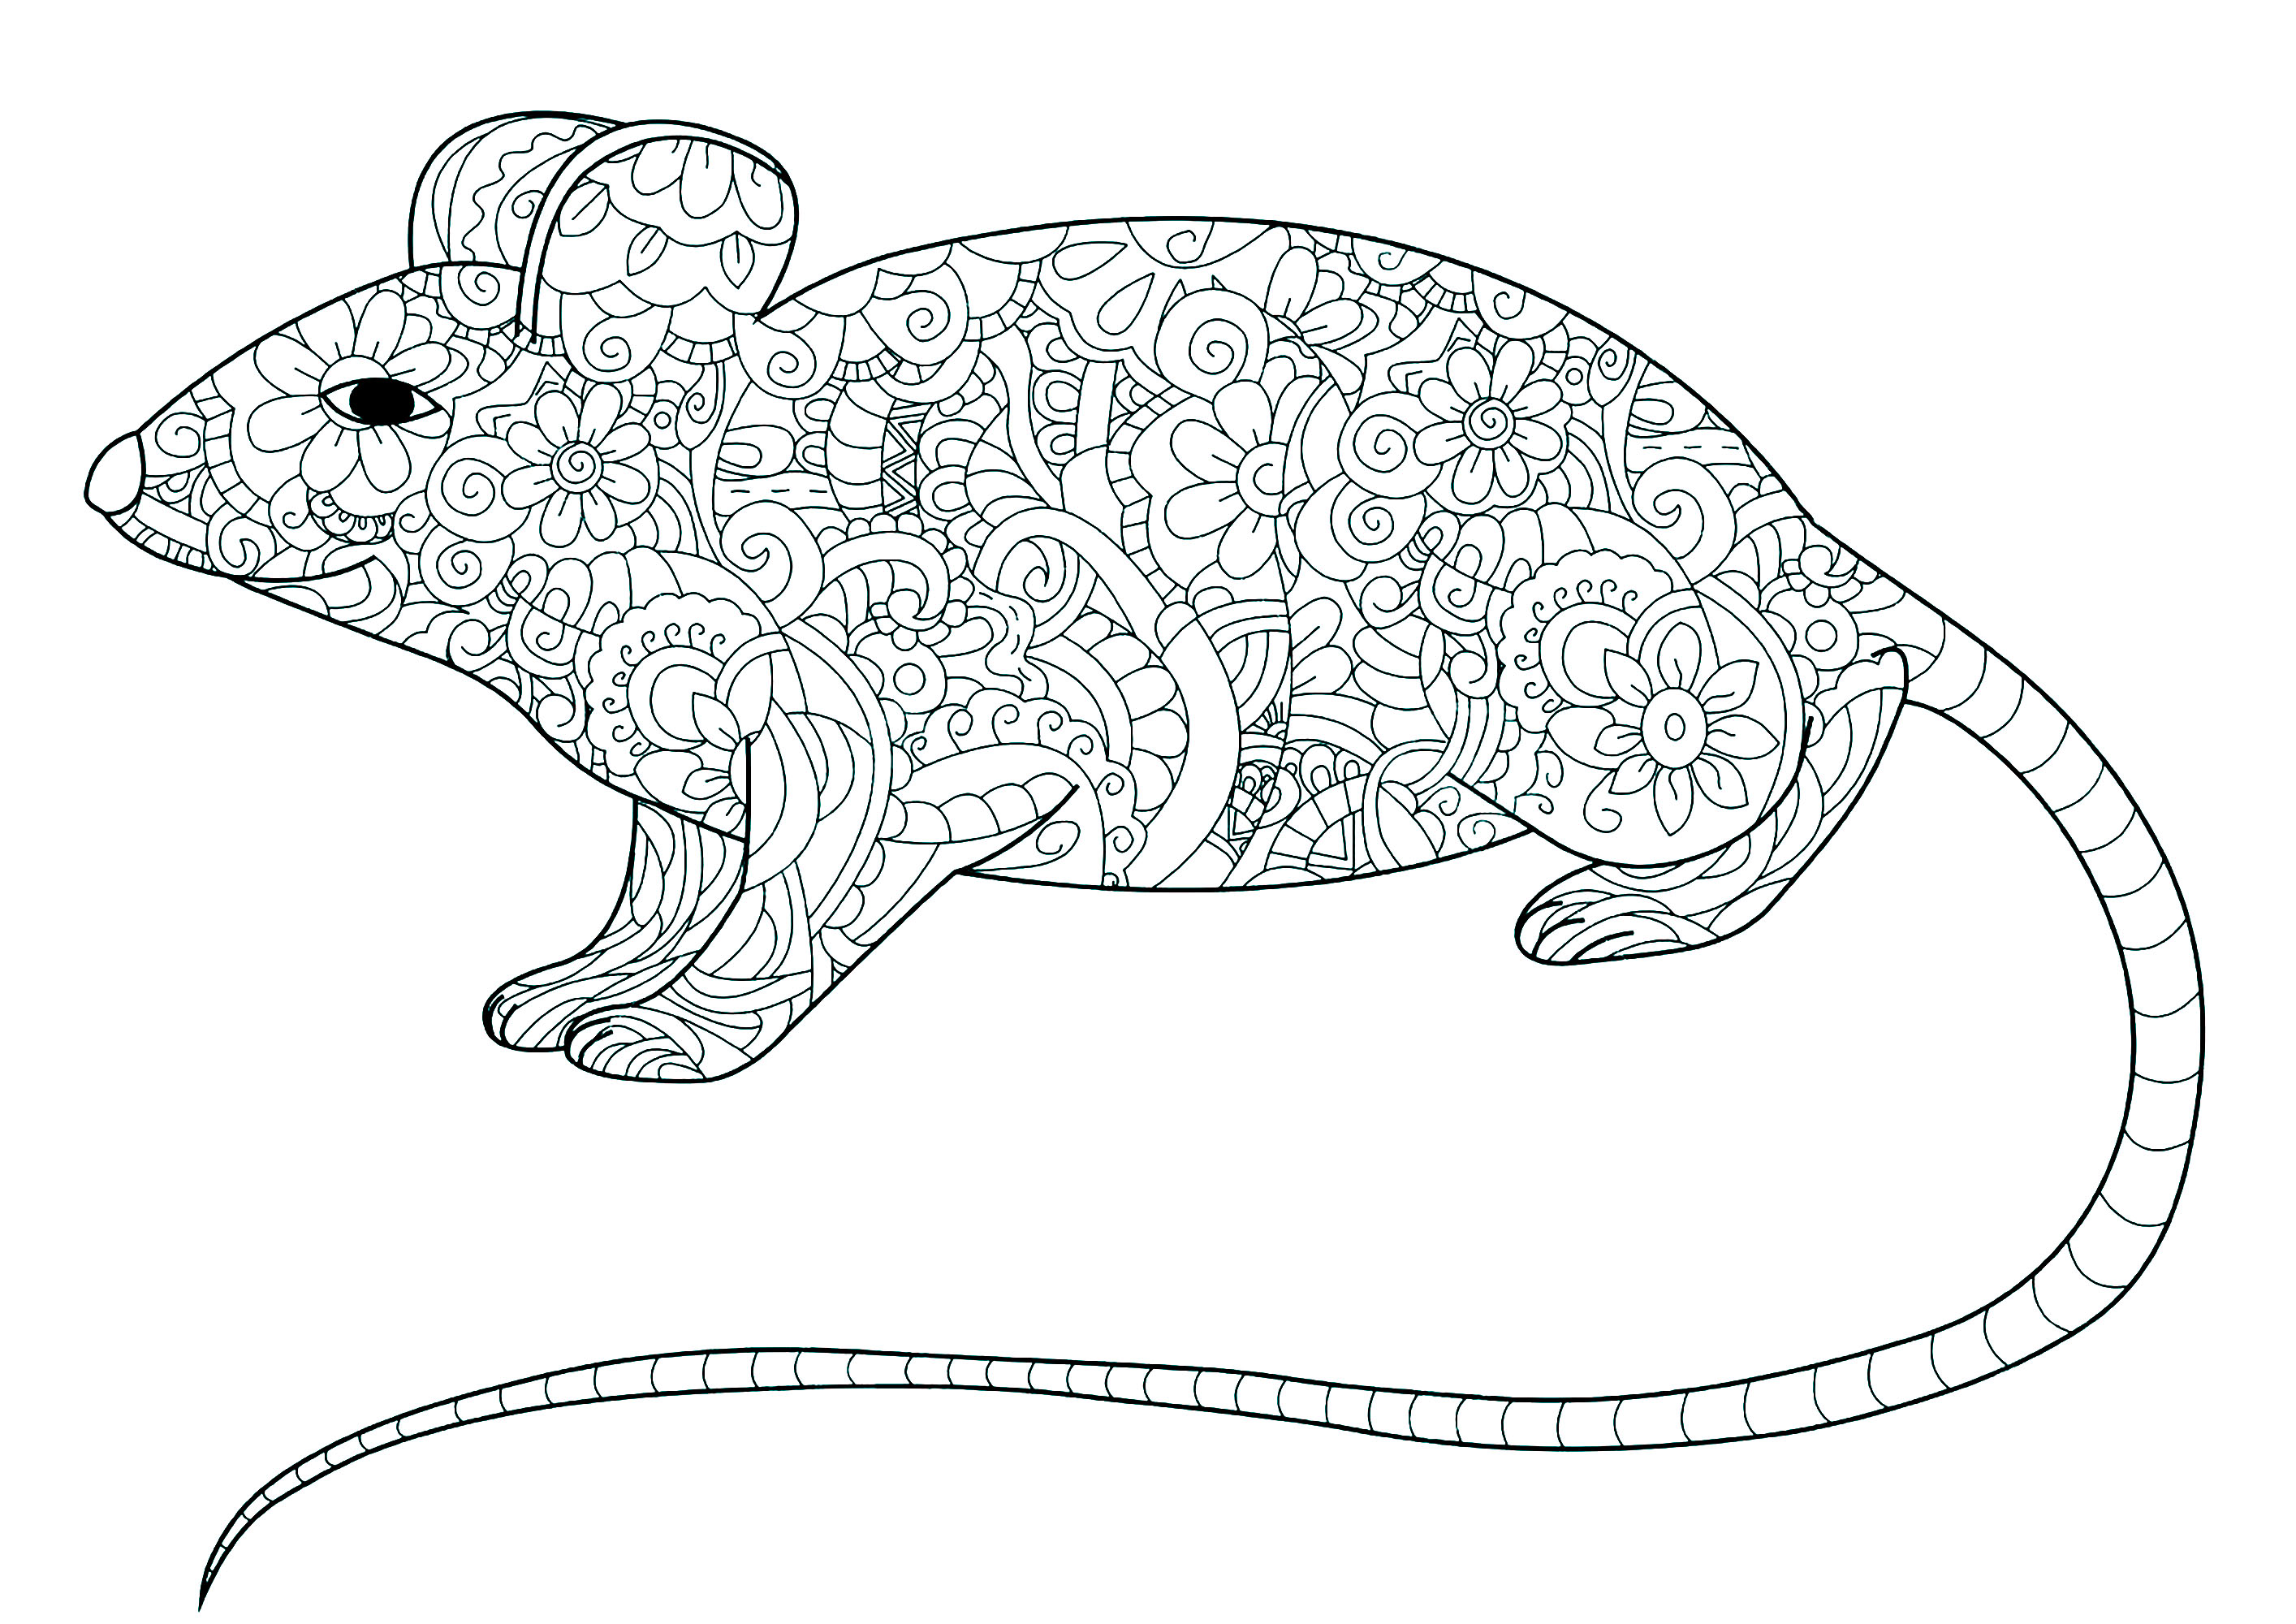 Ausmalbild einer Maus mit langem Schwanz und der Körper gefüllt mit floralen Mustern